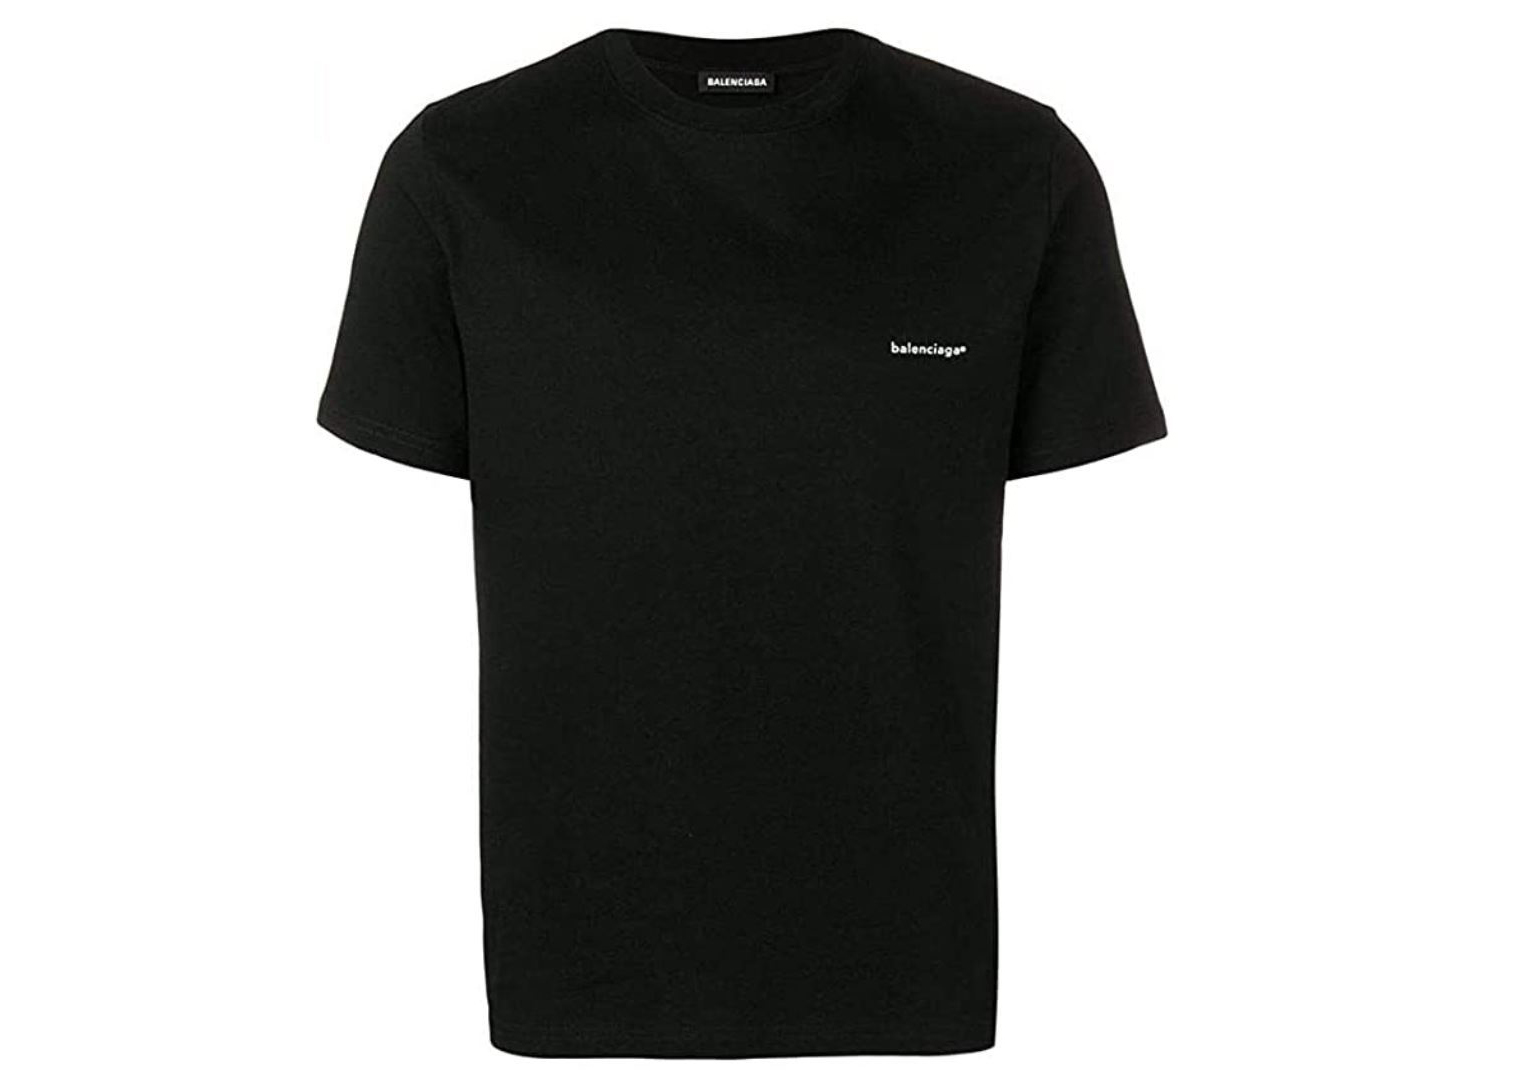 Balenciaga Crest Black Logo Tee Tshirt Mens Fashion Tops  Sets Tshirts   Polo Shirts on Carousell